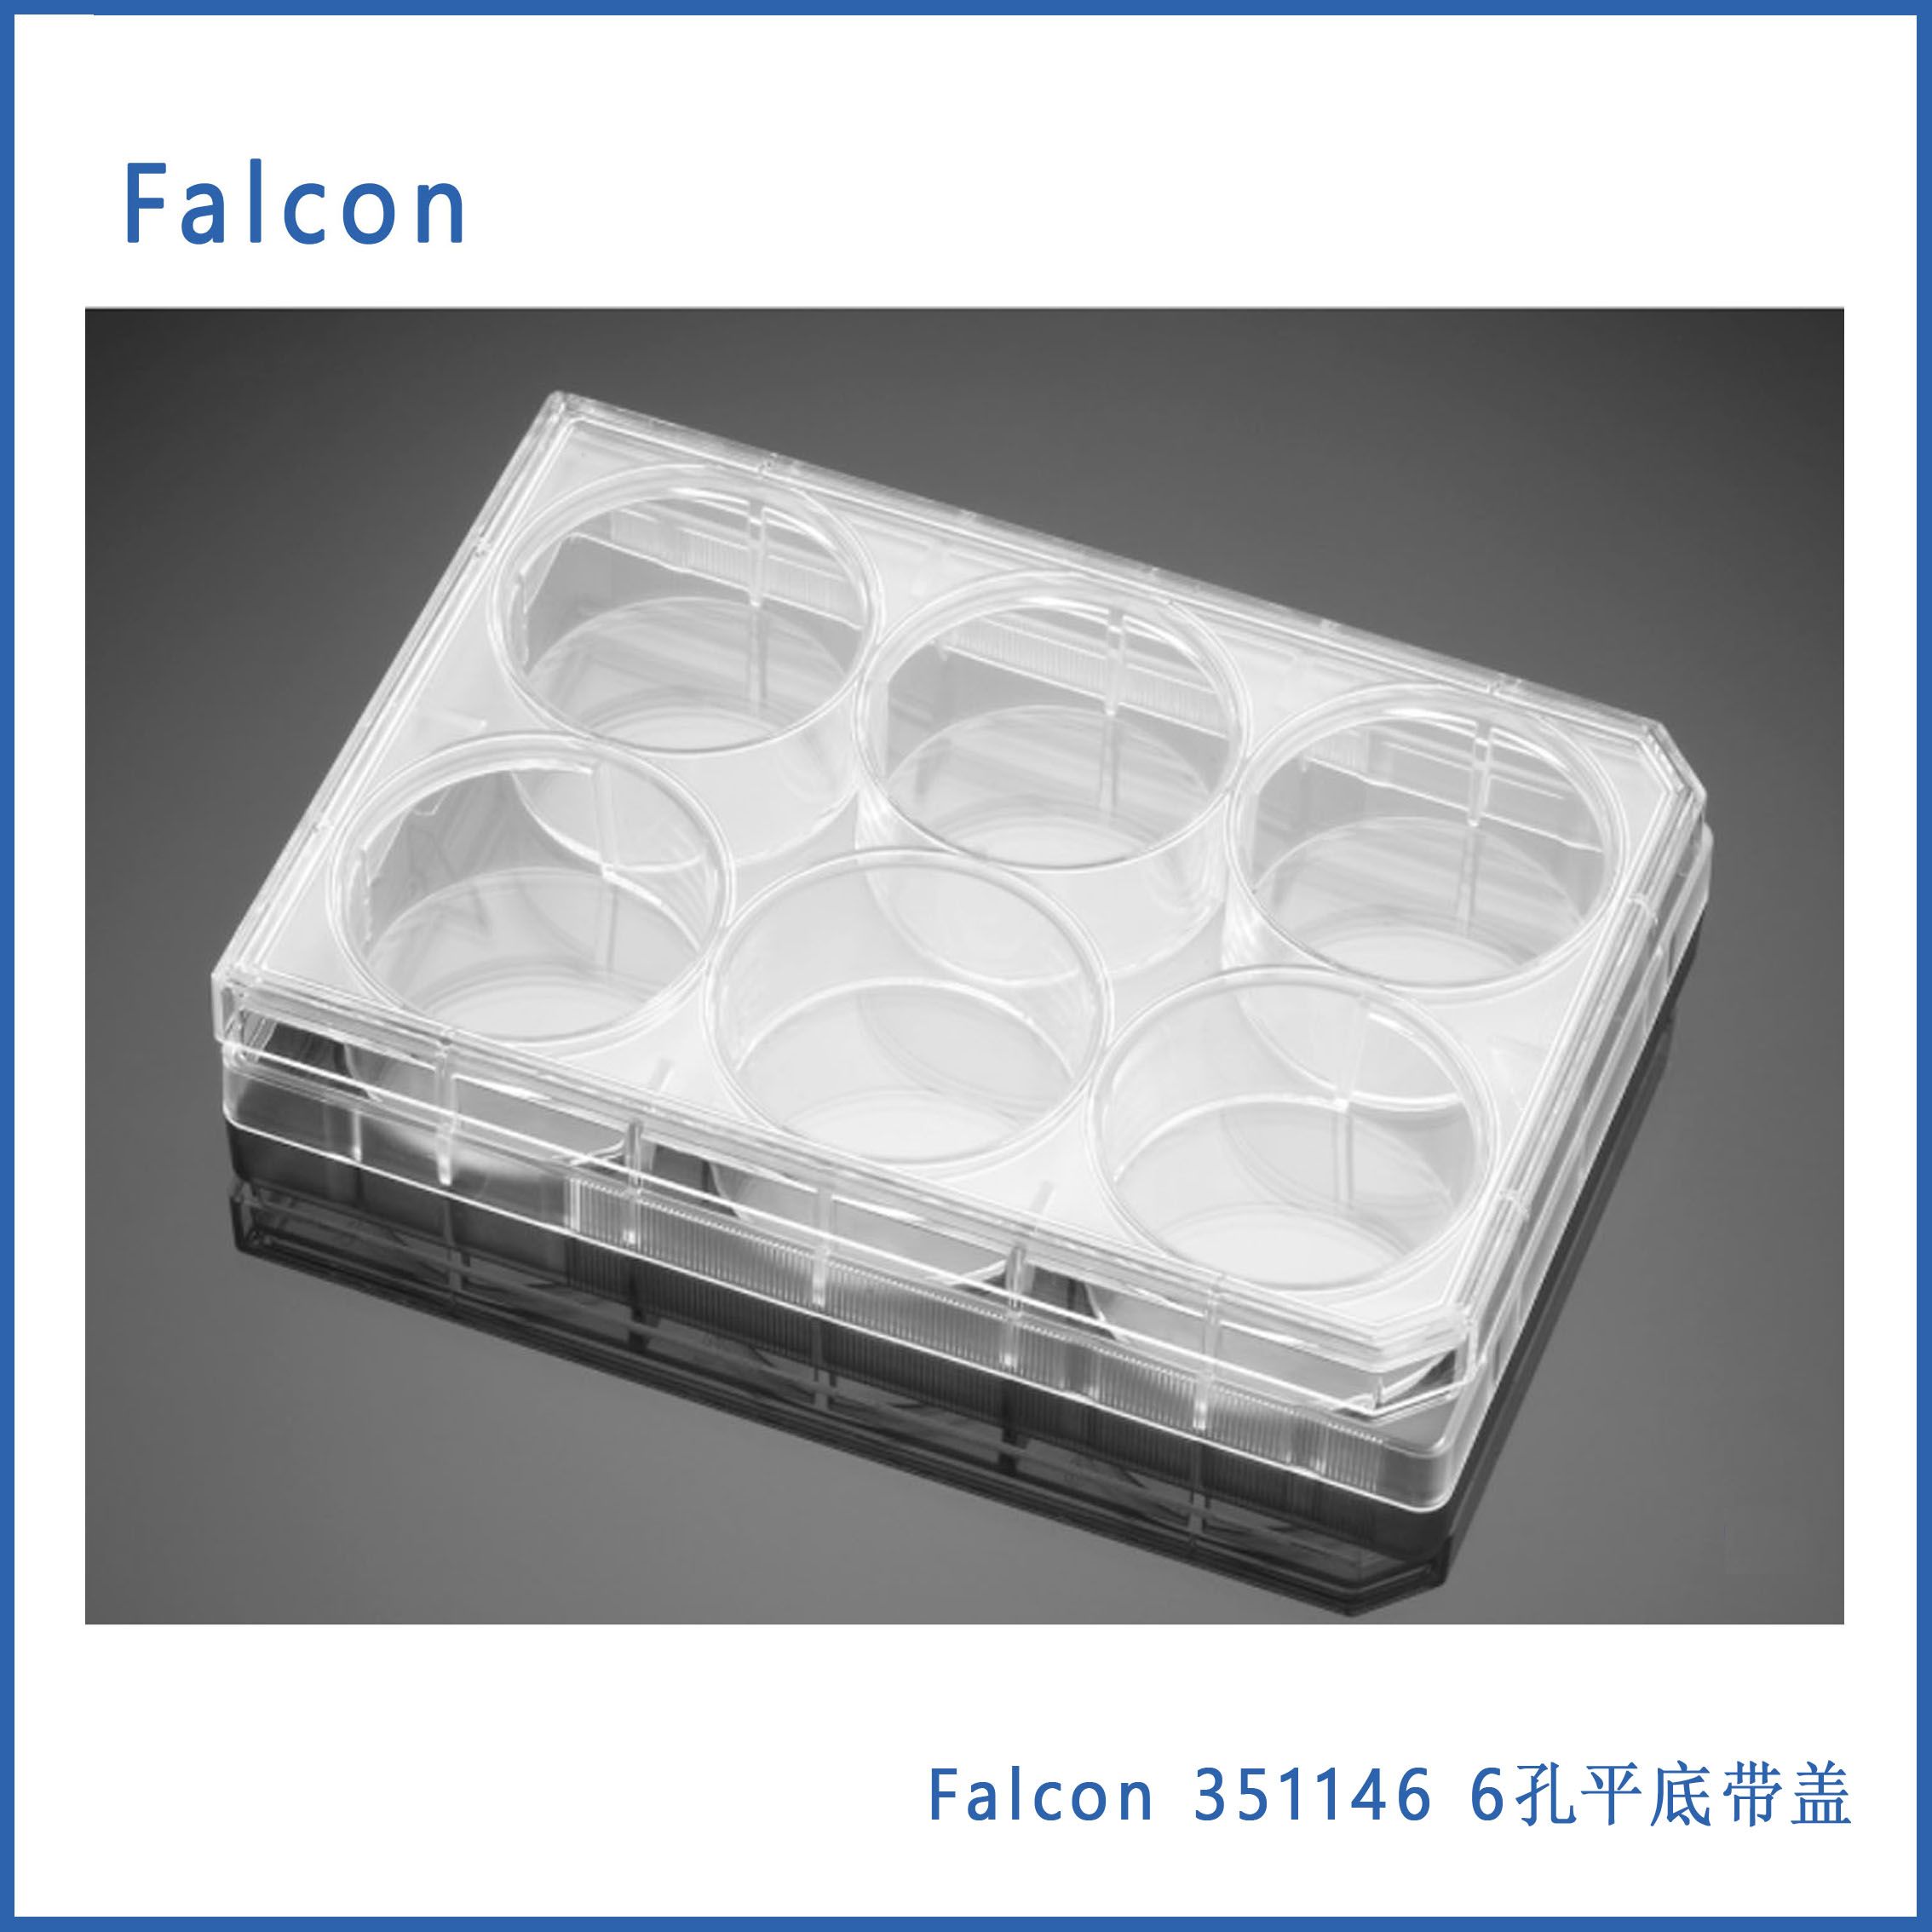  Conrning Falcon 351146 6孔平底带盖聚苯乙烯无热源  表面未处理无菌微孔板,50/箱,现货